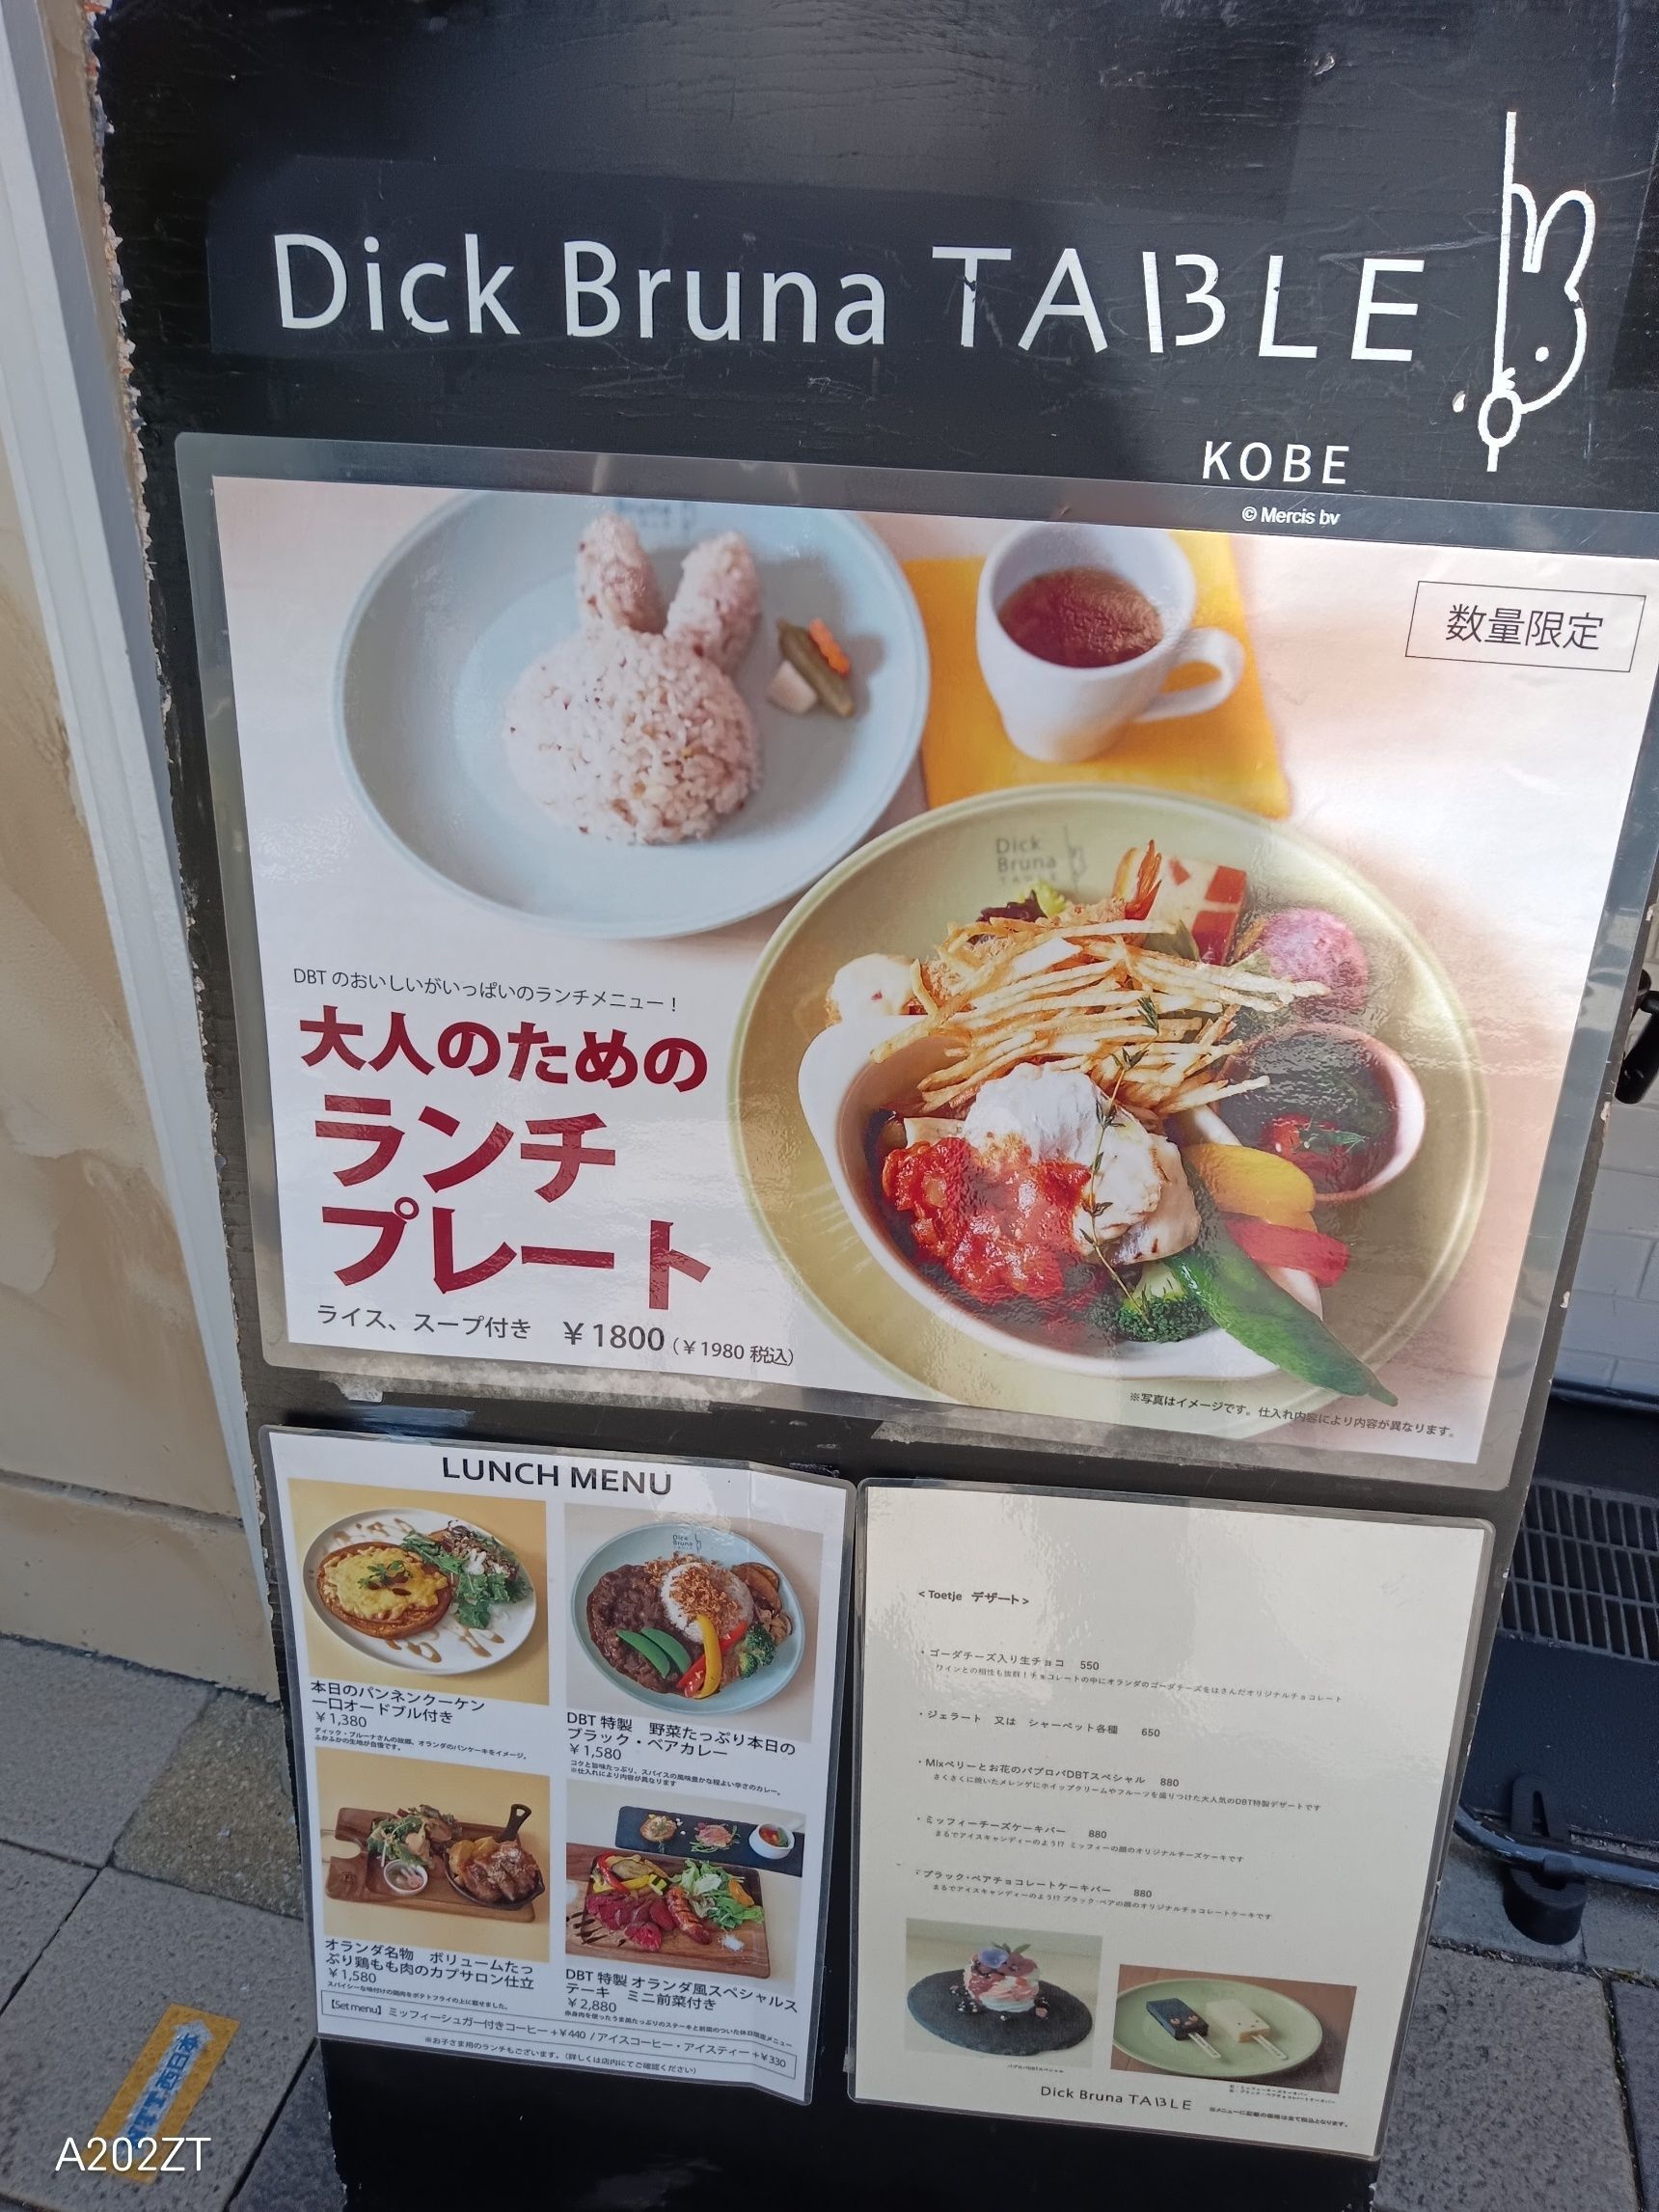 本日のお外lunch【Dick Bruna TABLE KOBE】